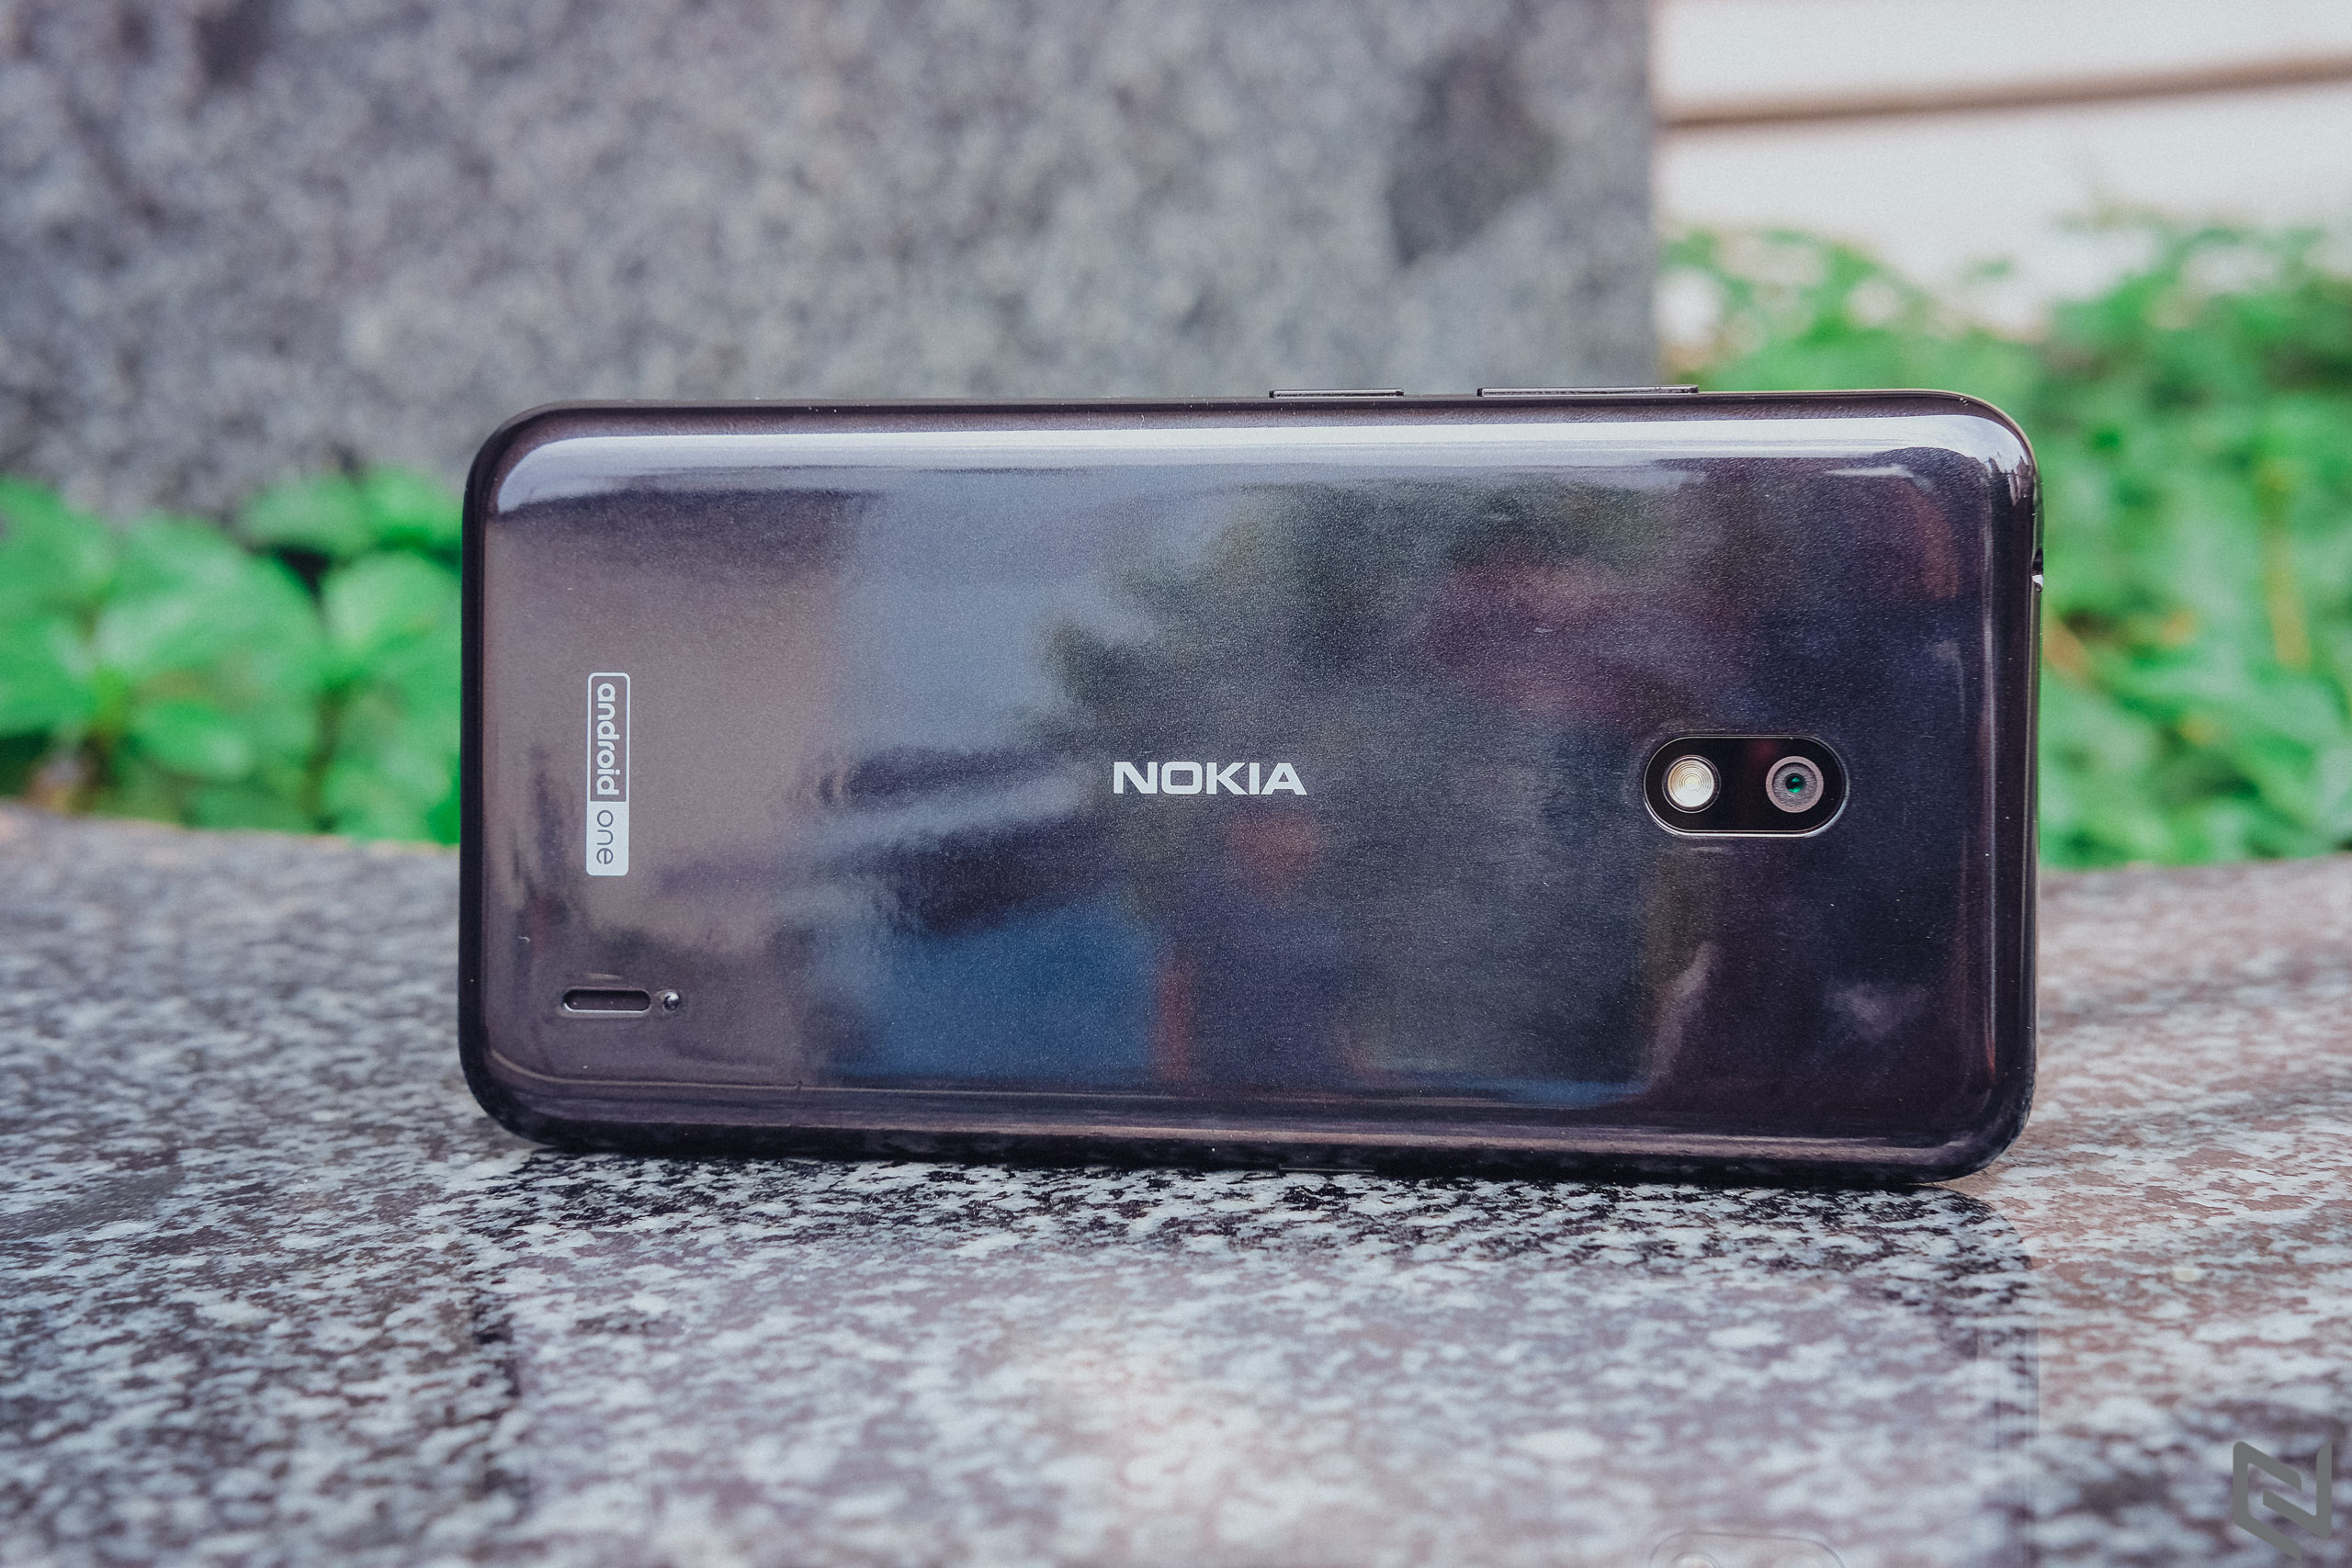 Trên tay Nokia 2.2: Cài sẵn Android 9 Pie, phím trợ lý ảo Google Assistant, nhận diện gương mặt, giá 2.29 triệu đồng